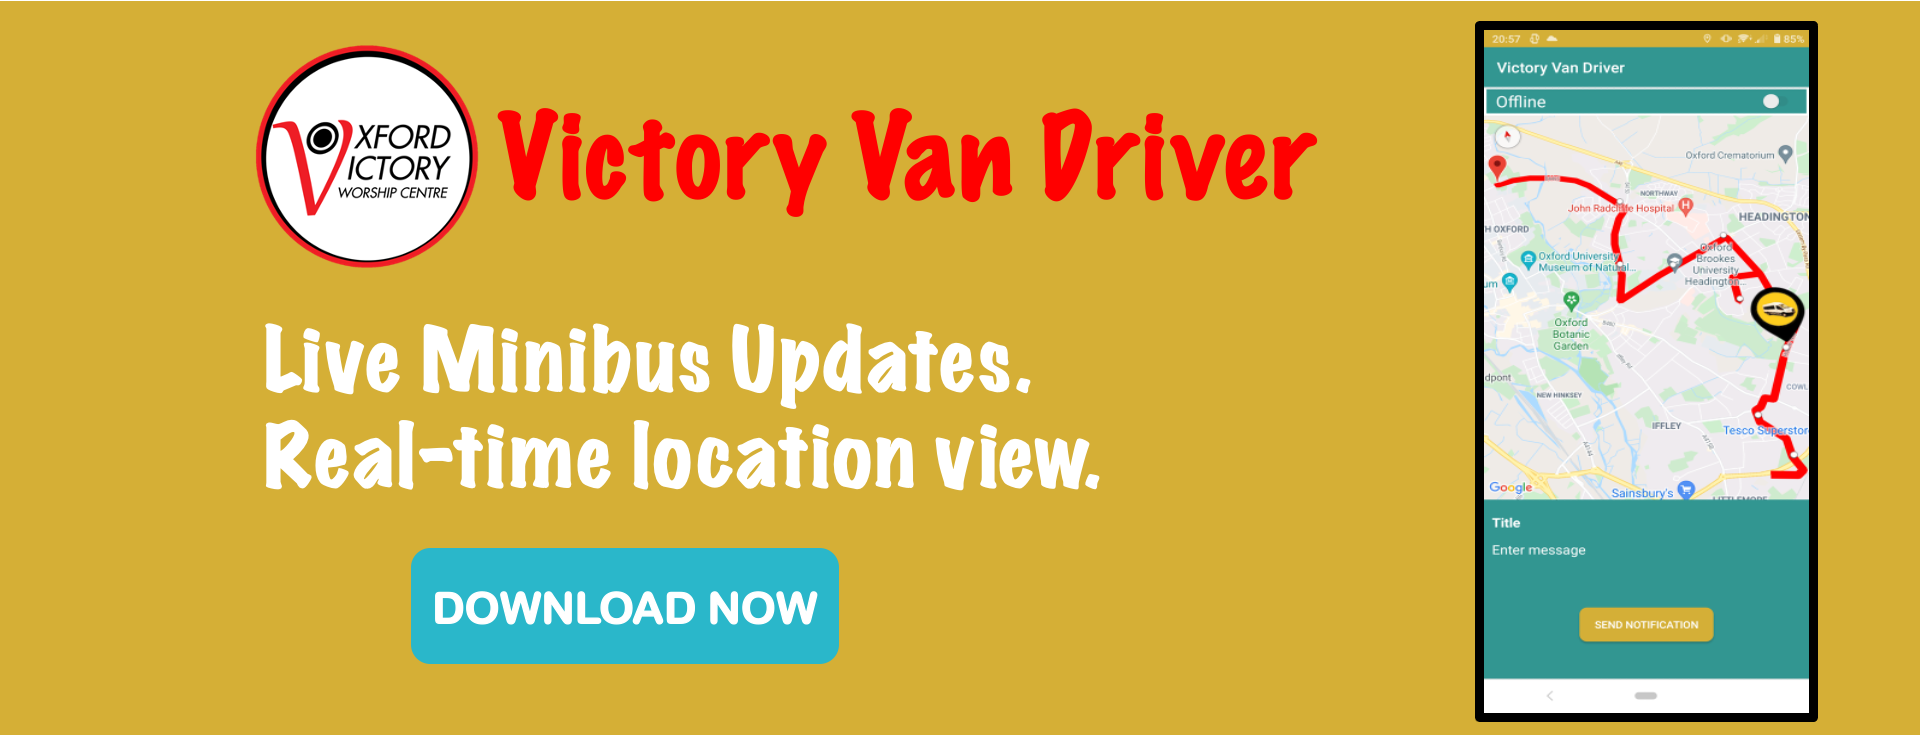 Victory Van Driver